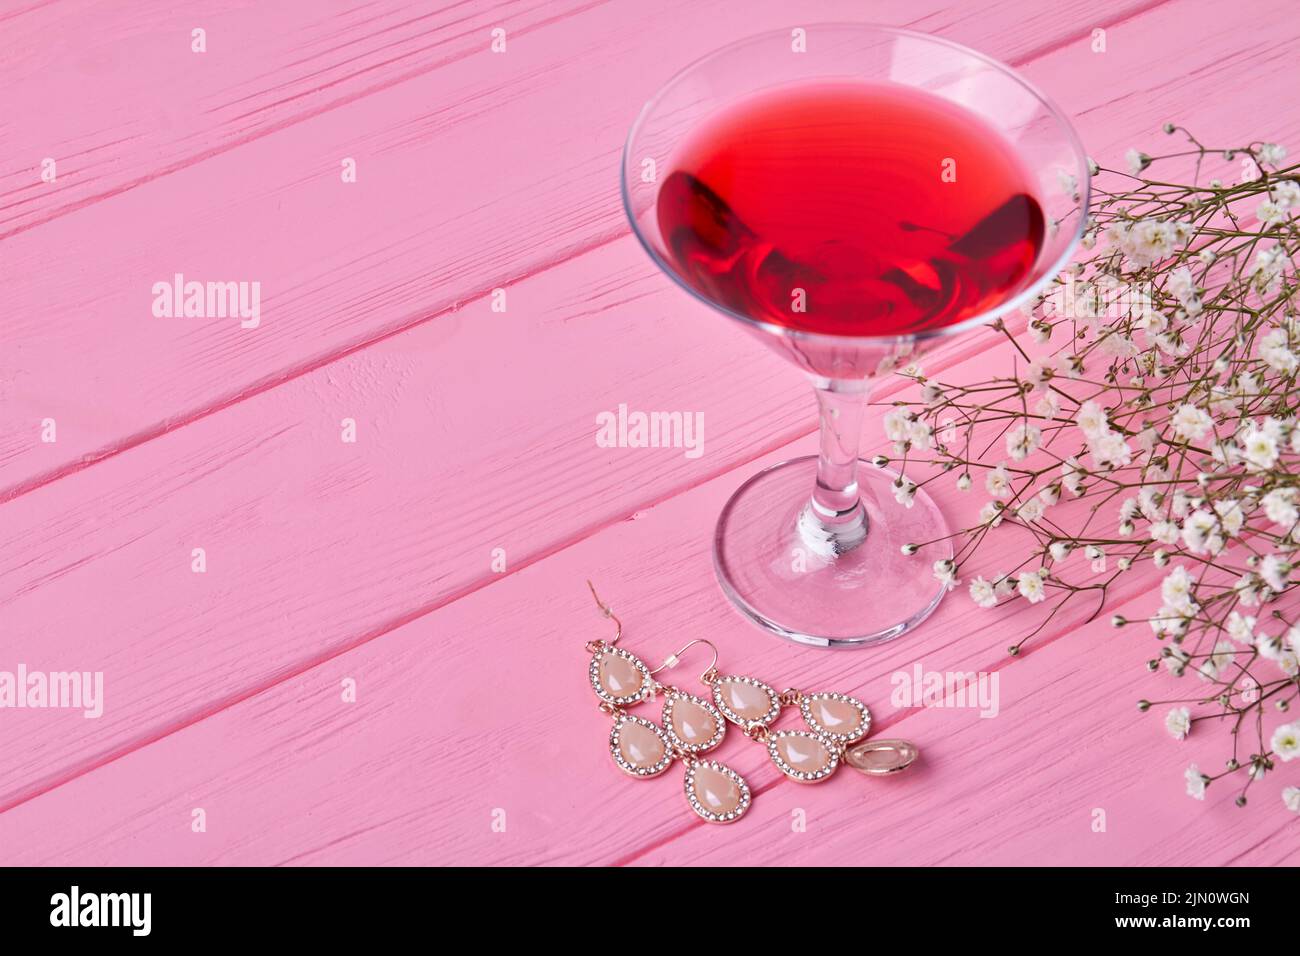 Primer plano de vaso de martini rojo con pendientes. Flores blancas diminutas. Foto de stock